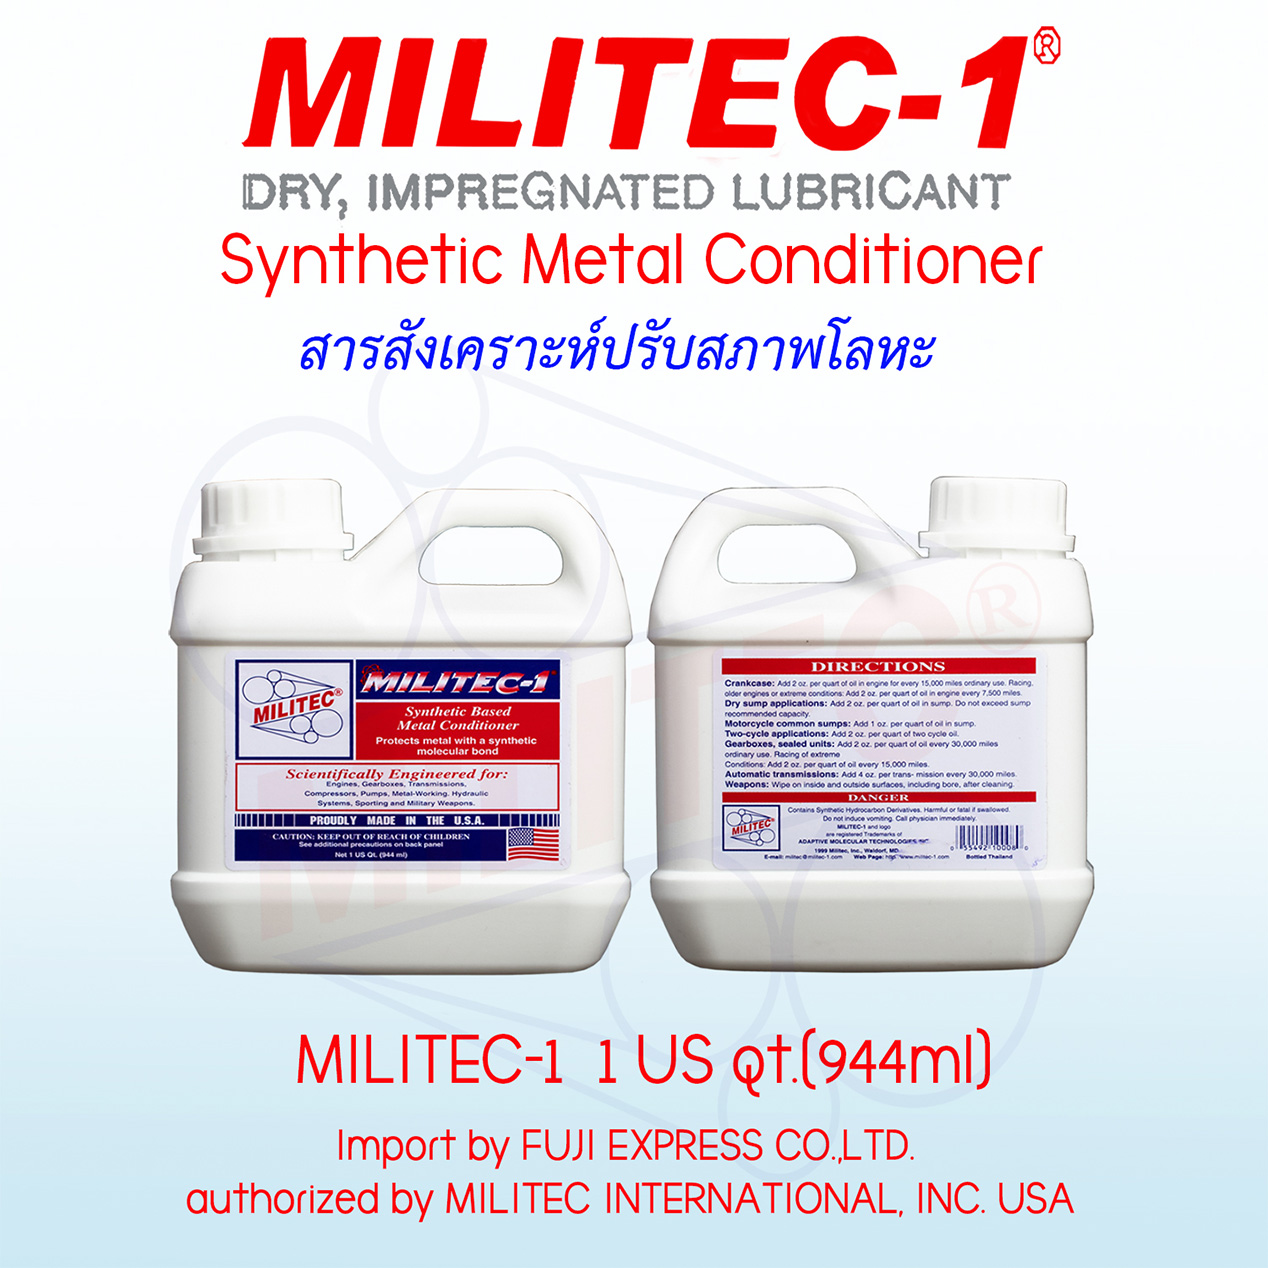 MILITEC-1